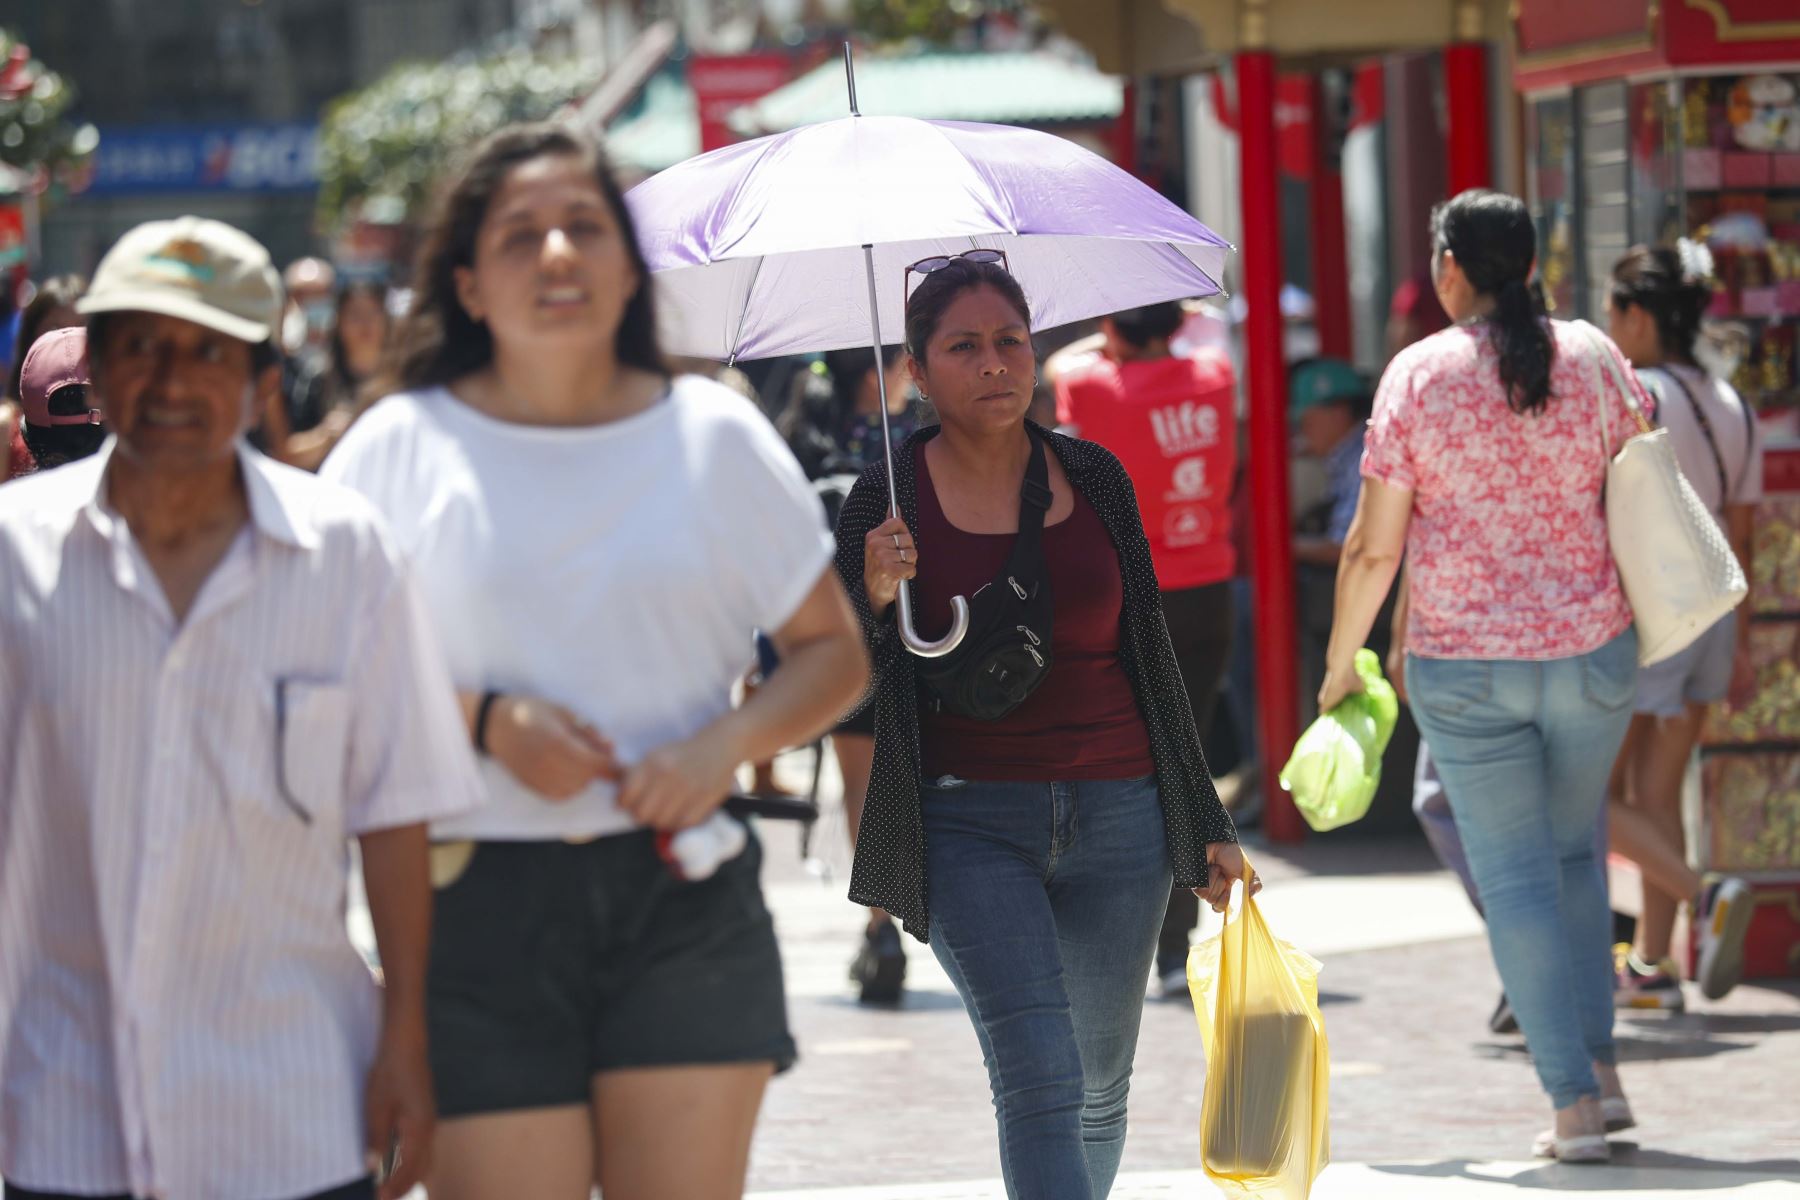 Personas caminando en el centro de Lima, comercios cerrados, personas, calor, sol, barrio chino, verano. Foto: ANDINA/Carla Patiño Ramírez